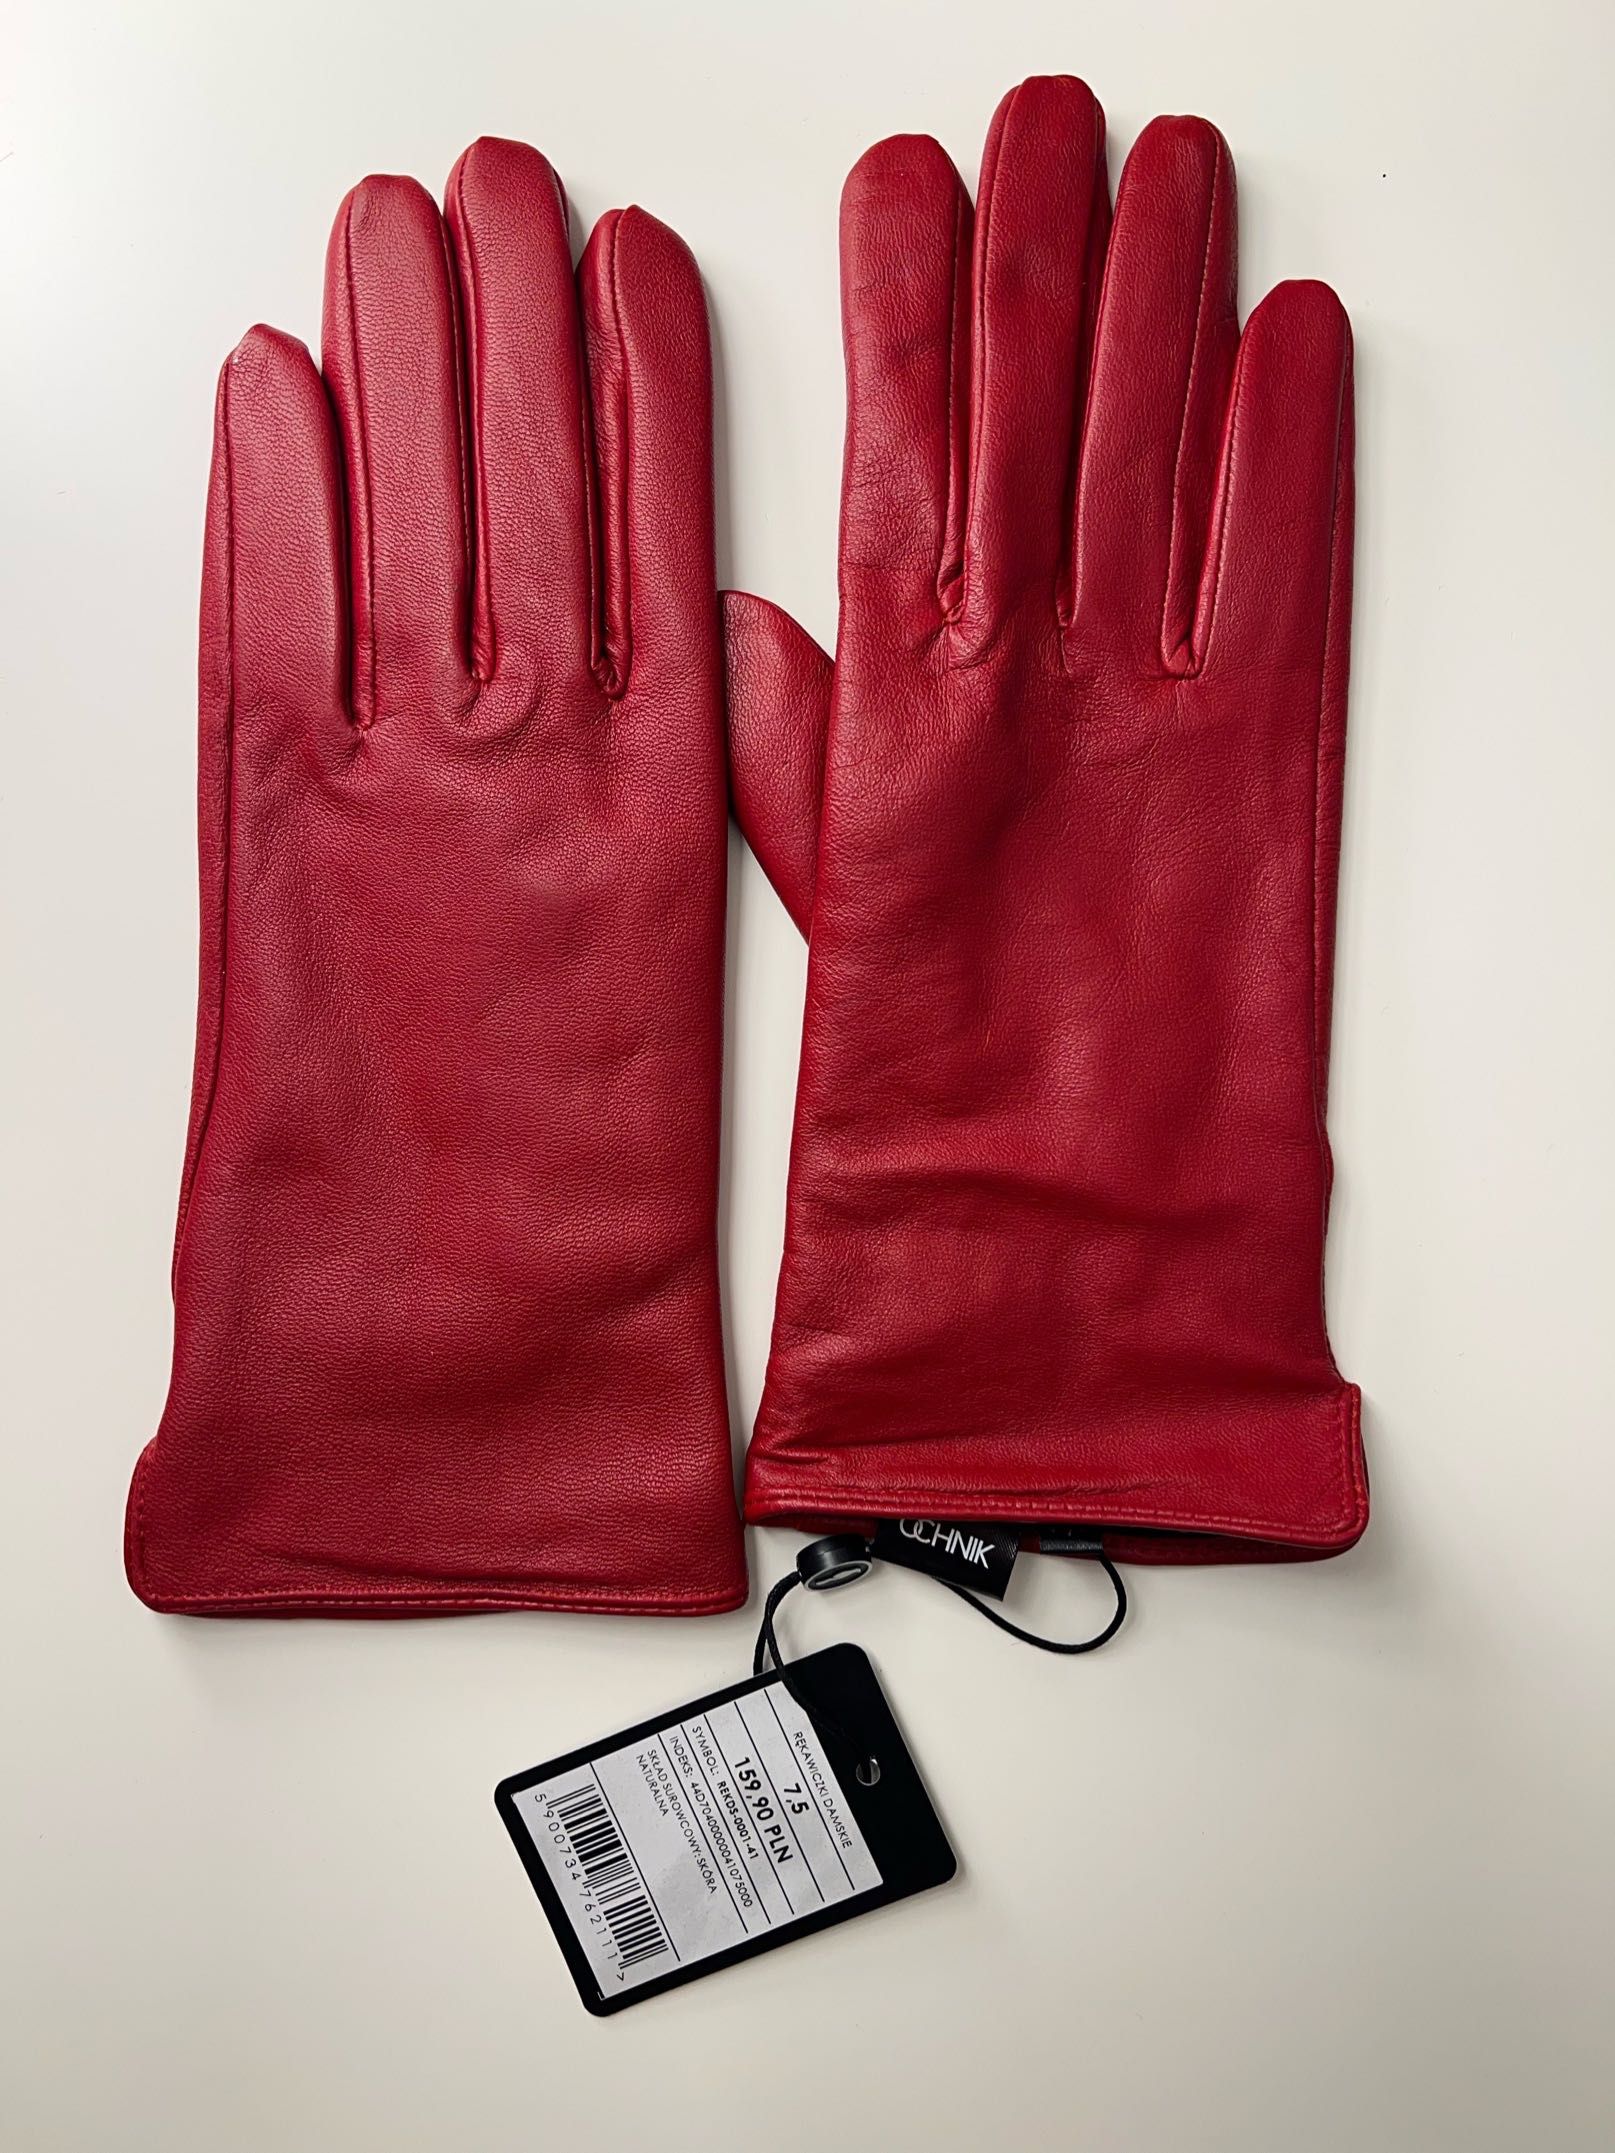 Czerwone skórzane rękawiczki, Ochnik - rozm. 7,5